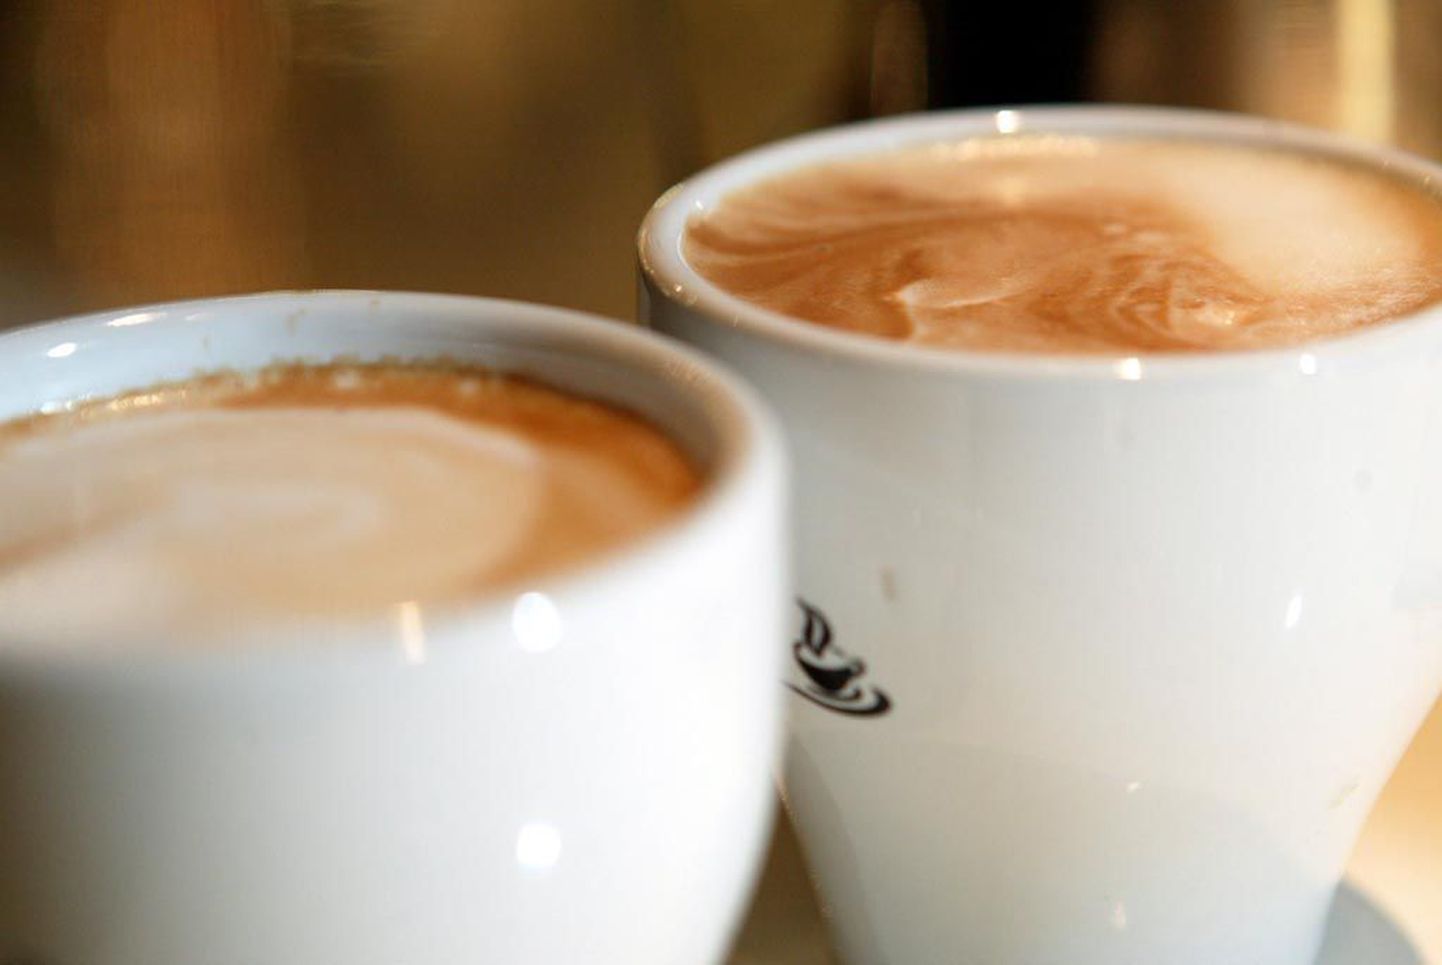 Täna algaval kohvikute nädalal pööratakse
erilist rõhku tee ja kohvi kvaliteedile.